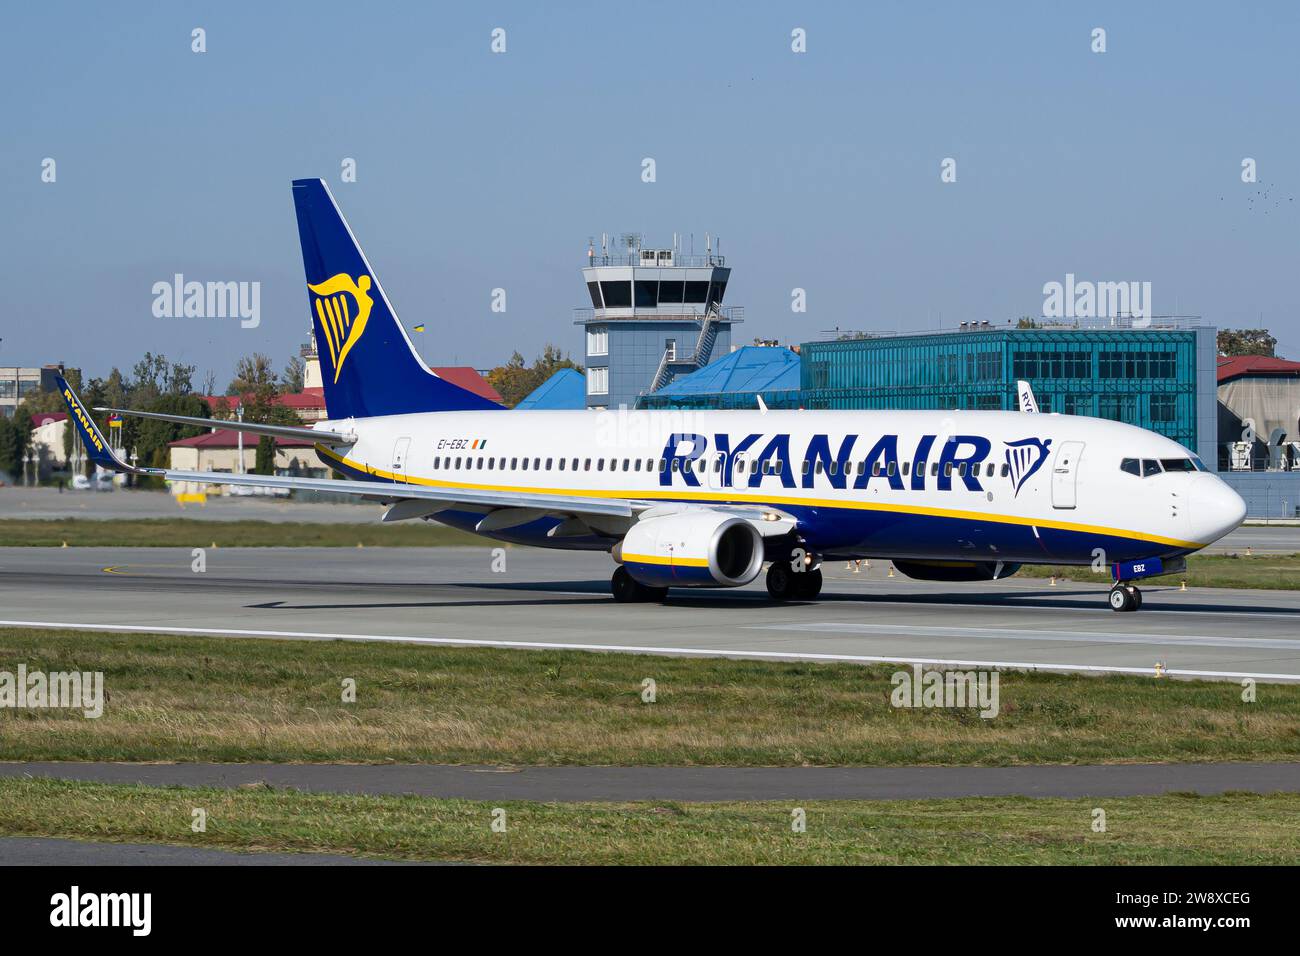 Le Boeing 737-800 Ryanair de la compagnie aérienne irlandaise low-cost décolle de l'aéroport de Lviv, avec la tour ATC en arrière-plan Banque D'Images